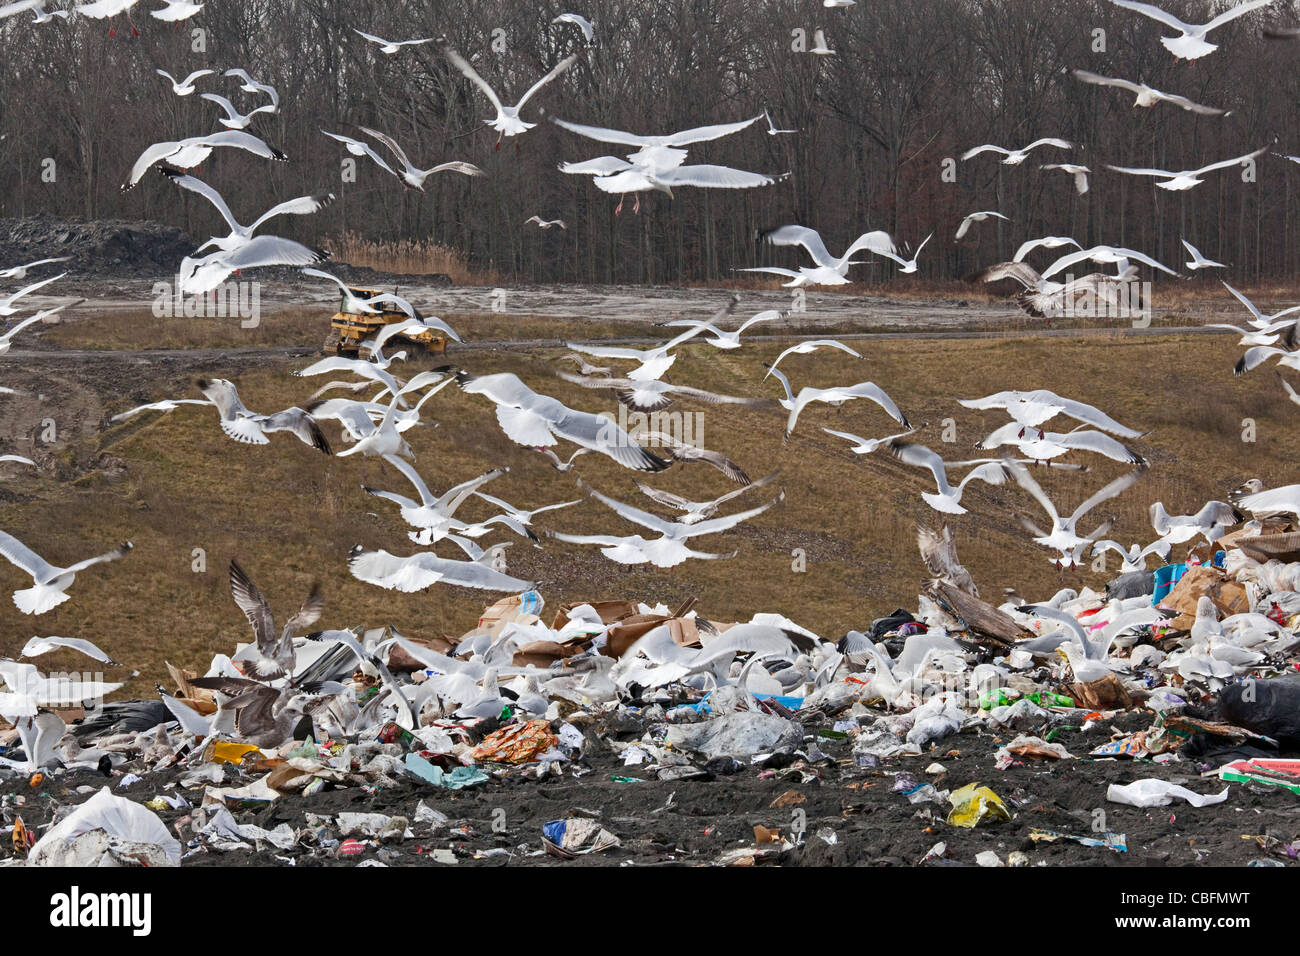 Smith's Creek, Michigan - Gaviotas pululan alrededor de la basura en un vertedero. Foto de stock